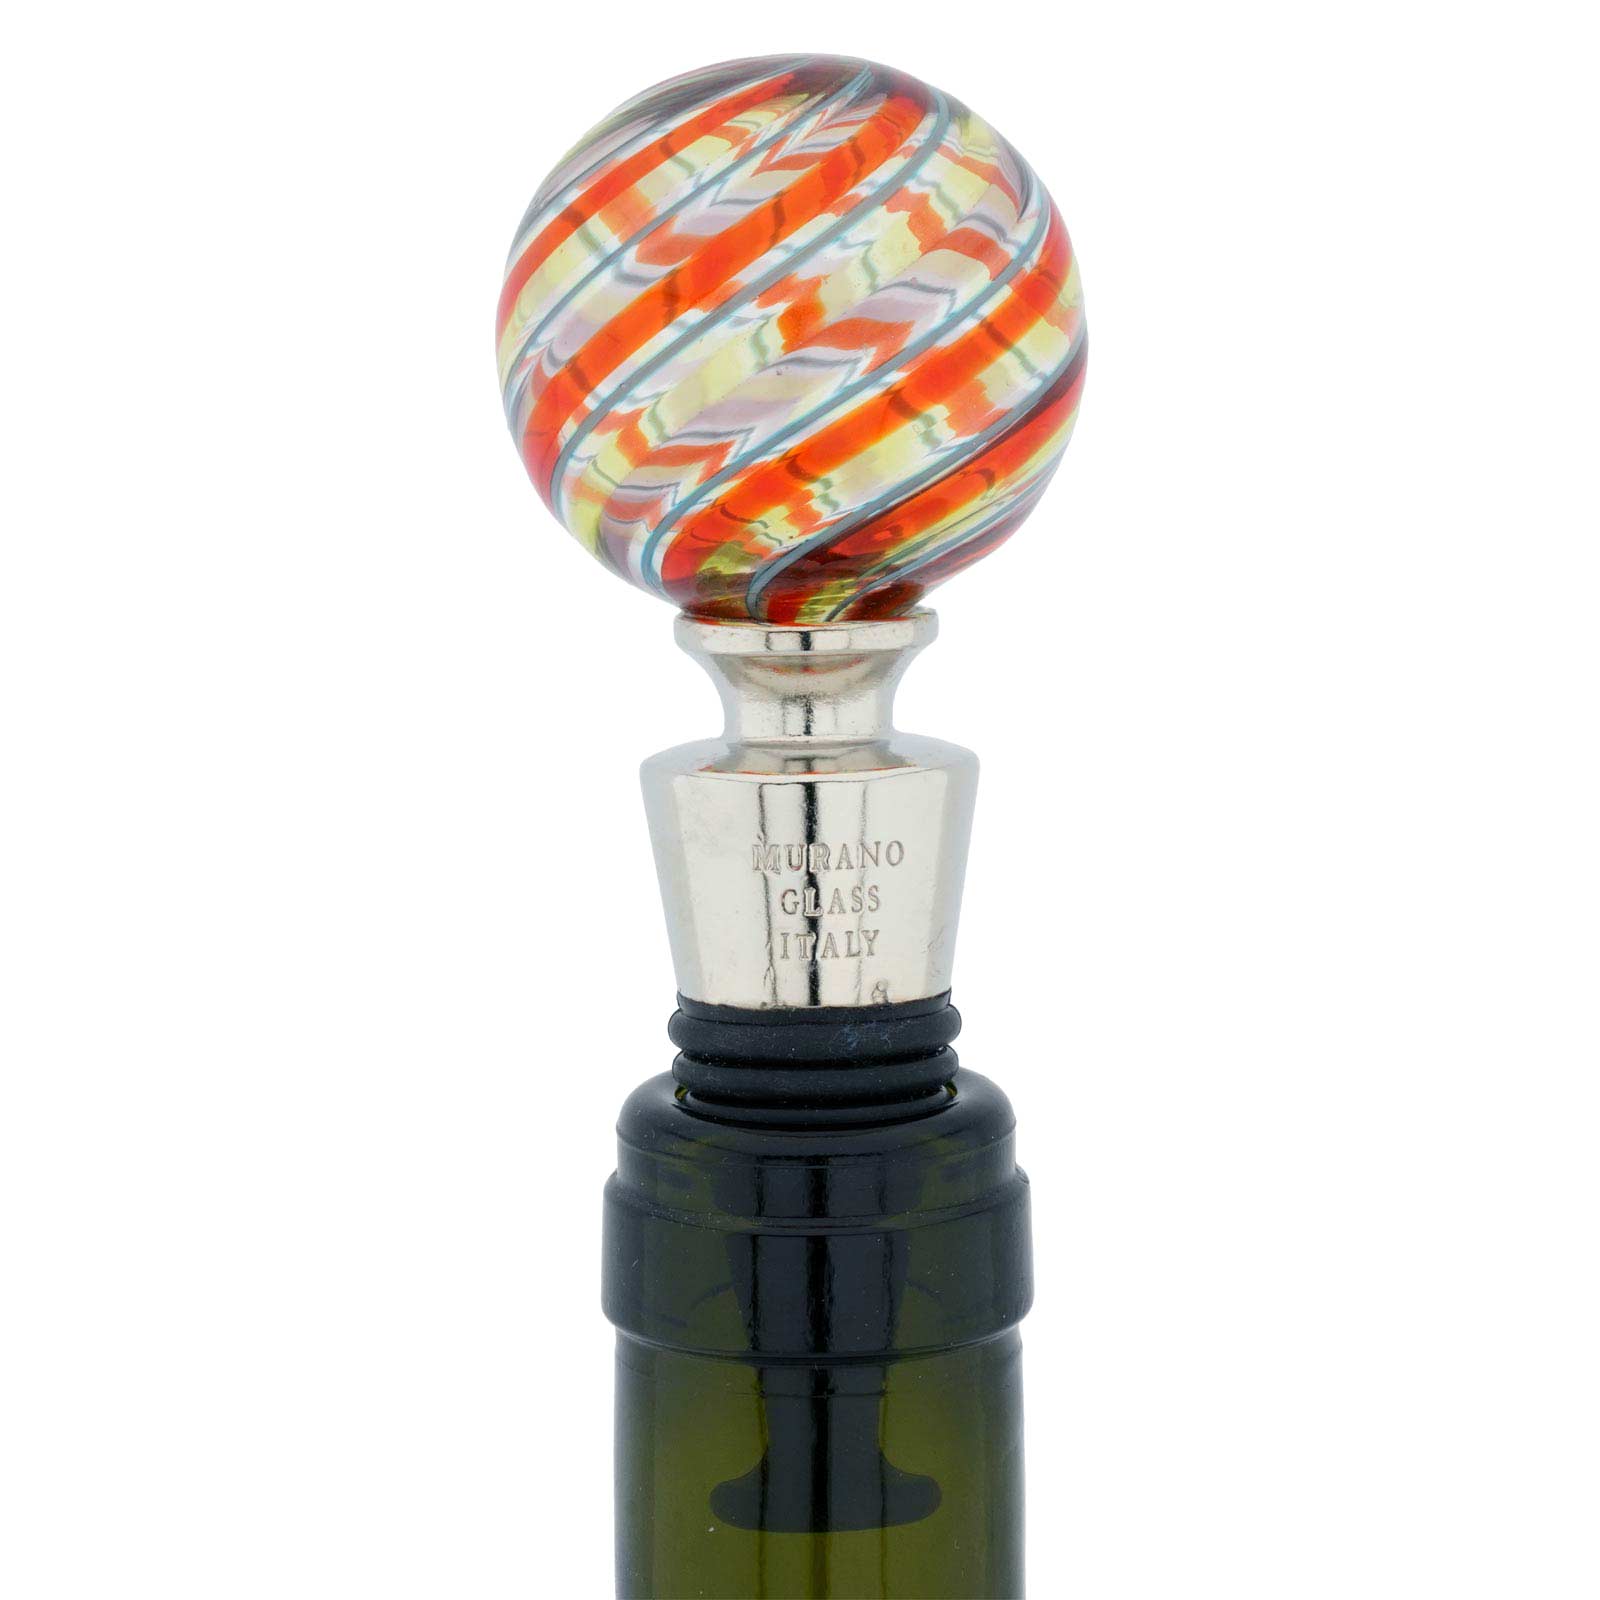 Murano Glass Bottle Stopper - Elegant Stripes